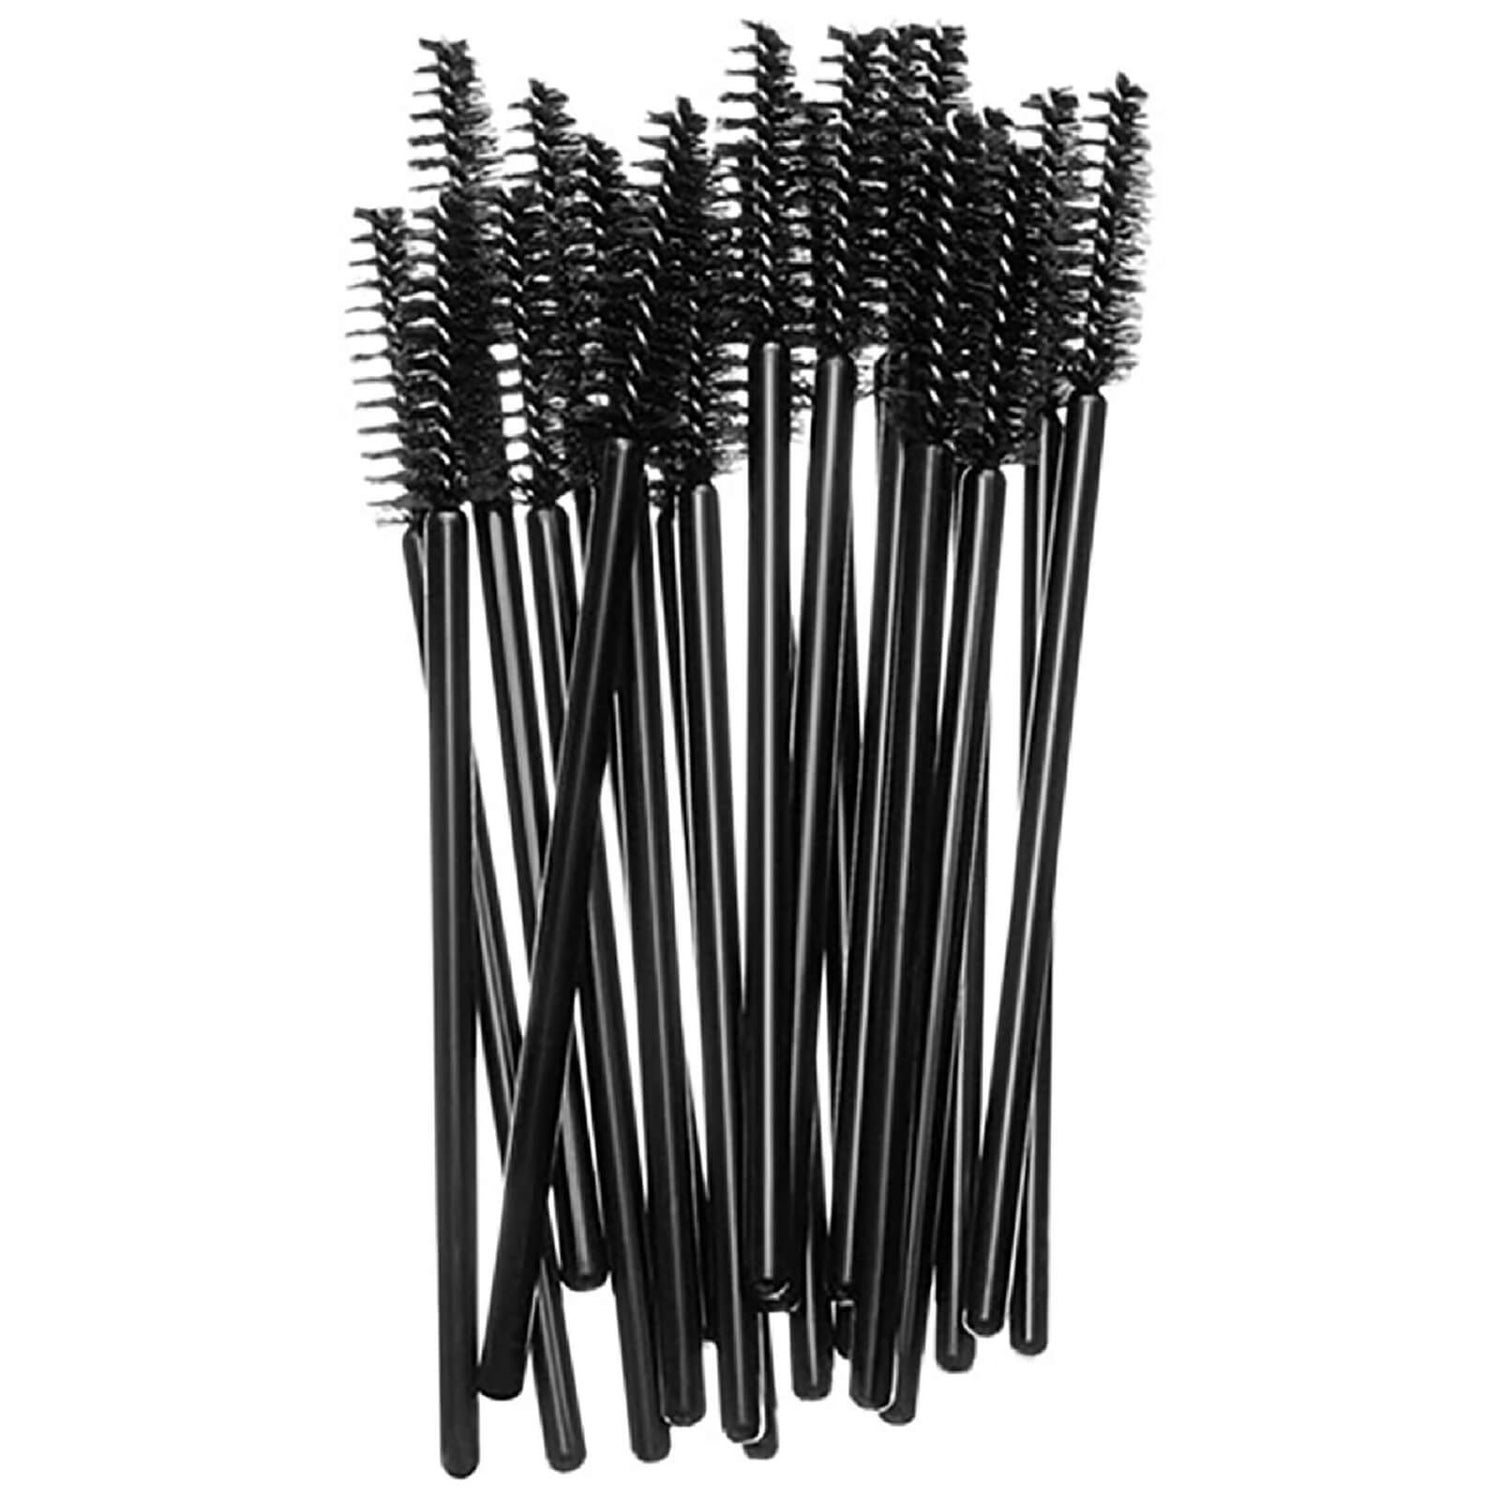 Одноразовые палочки для туши MAC Disposable Mascara Wands, 20 шт